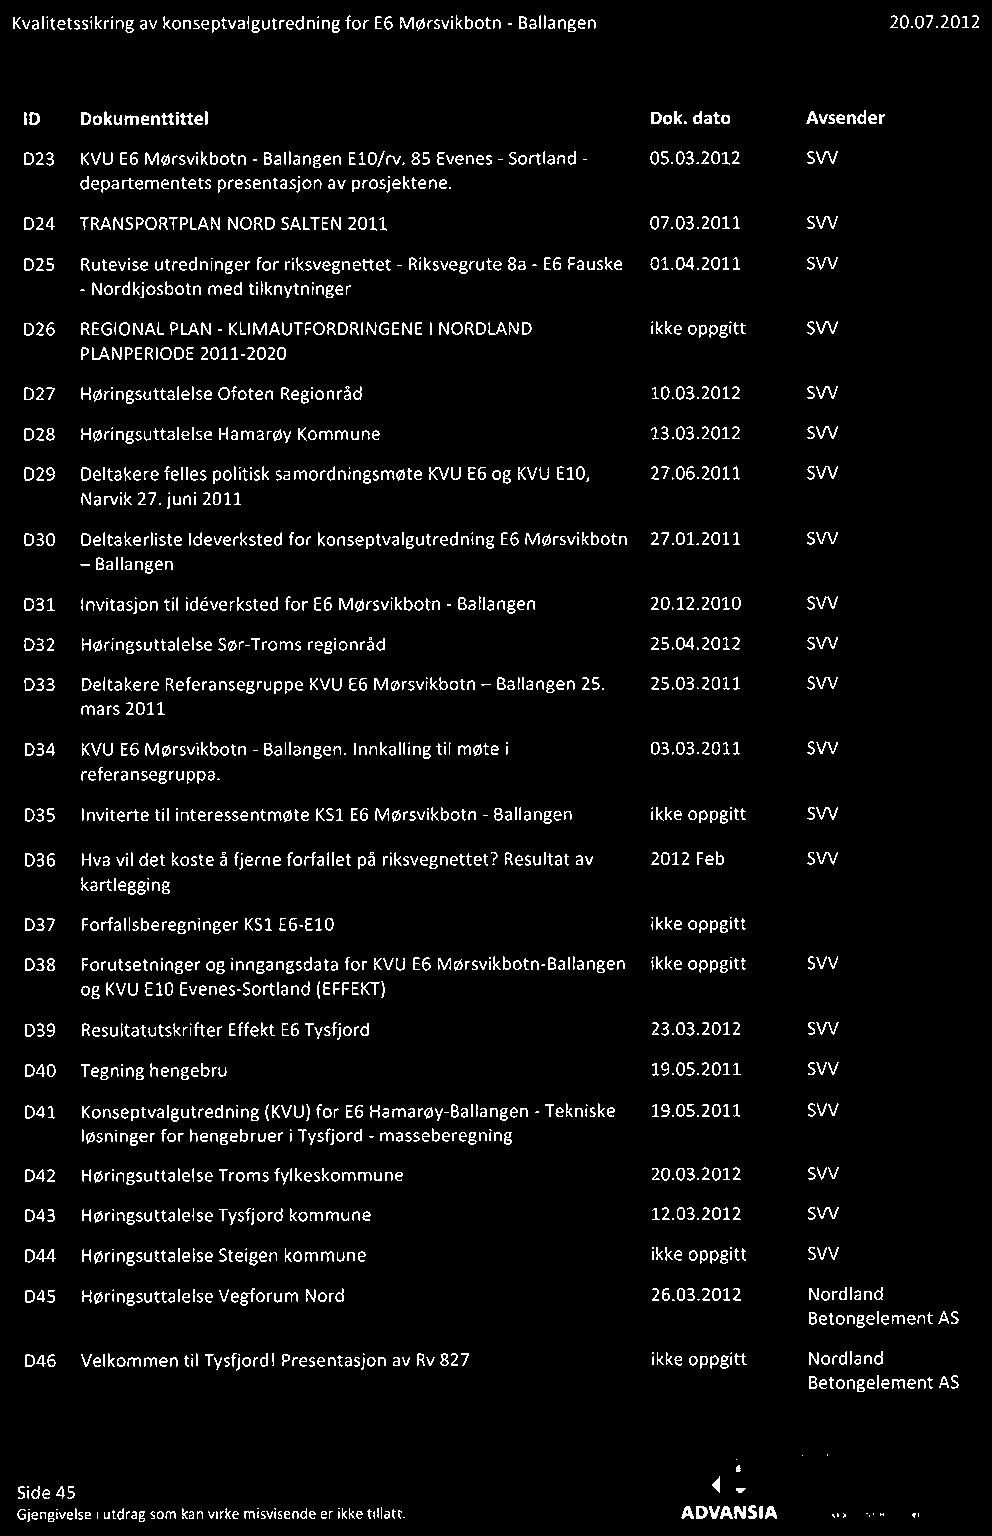 2011 SVV - Nordkjosbotn med tilknytninger D26 REGIONAL PLAN - KLIMAUTFORDRINGENE I NORDLAND ikke oppgitt SVV PLANPERIODE2011-2020 027 Høringsuttalerse Ofaten Regionråd 10.03.